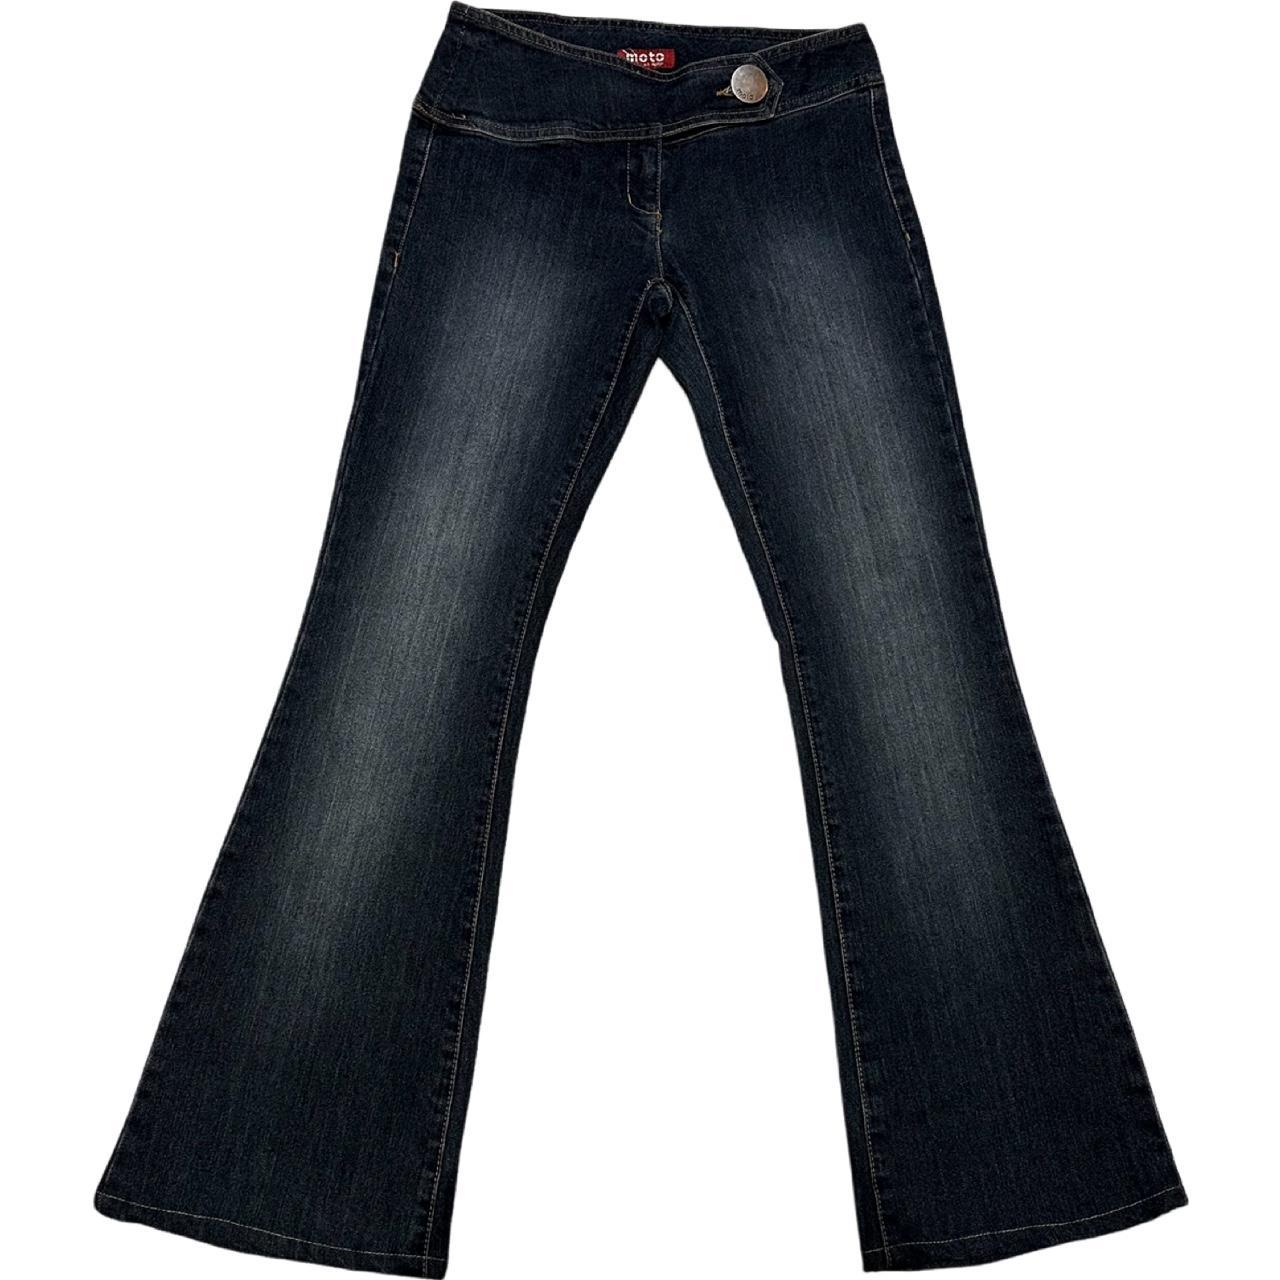 Asymmetrical Low Rise Jeans